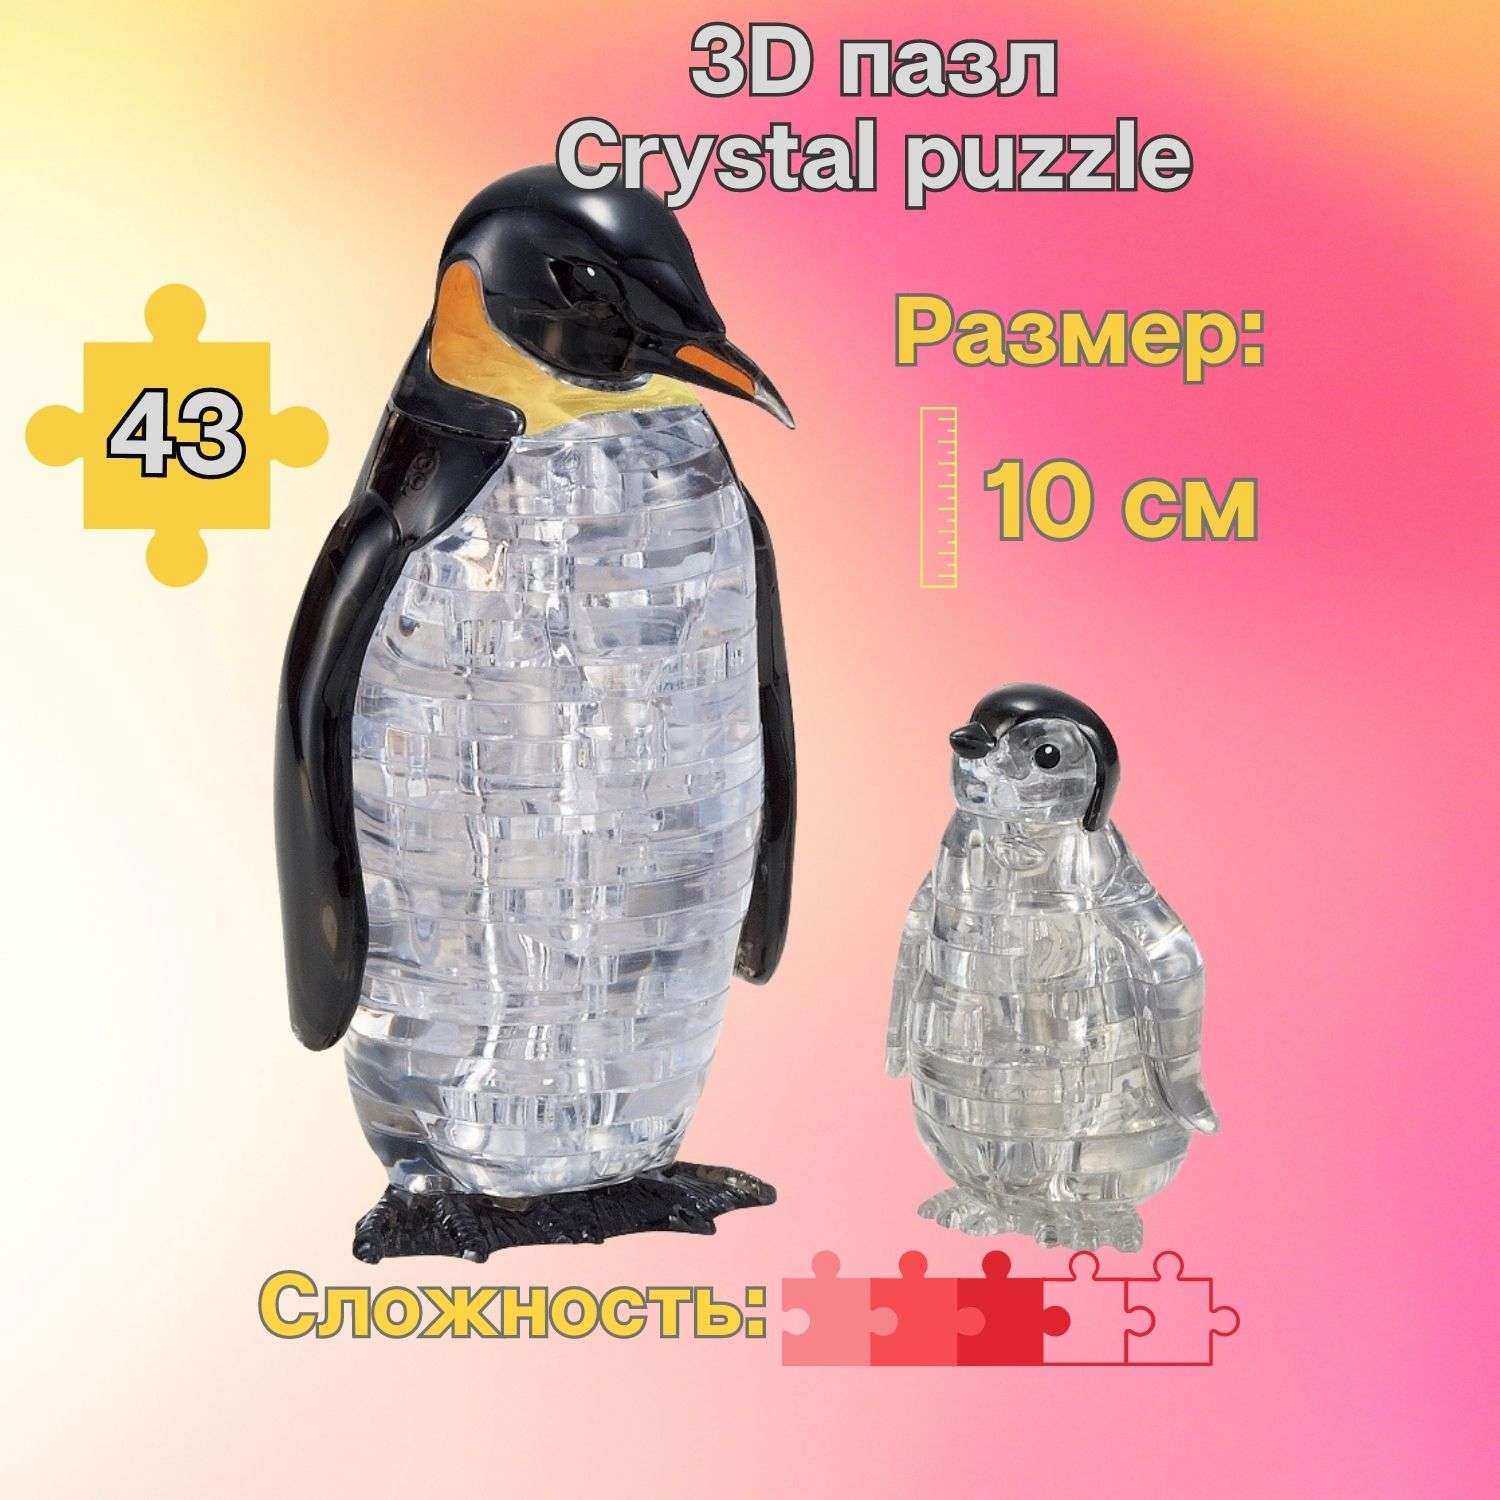 3D-пазл Crystal Puzzle IQ игра для детей кристальные Пингвины 43 детали - фото 1